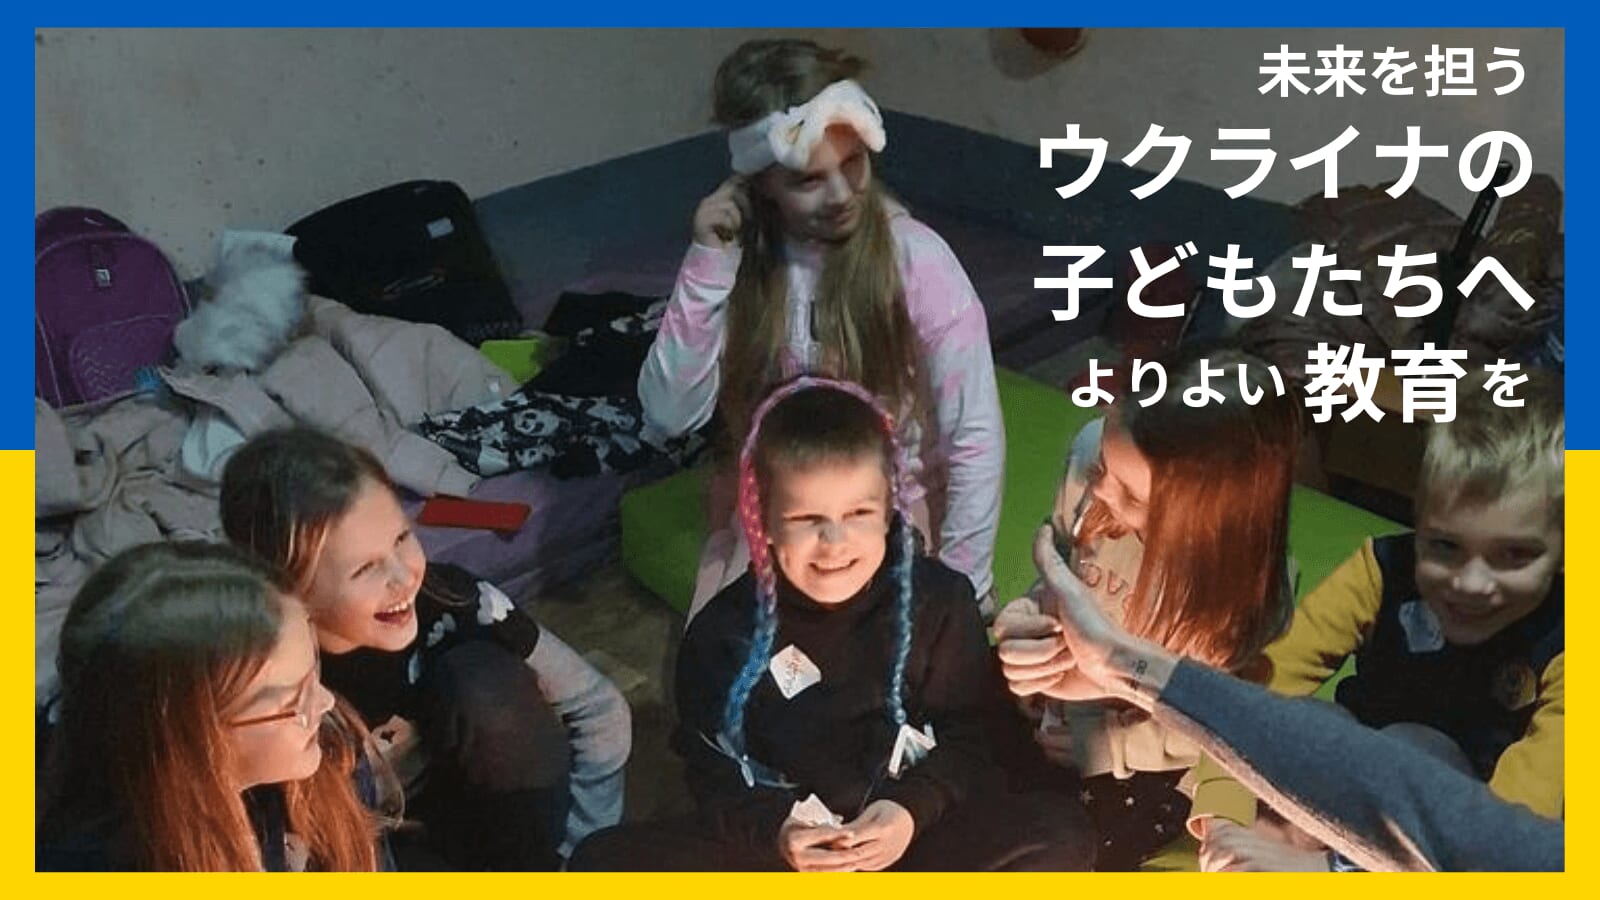 「未来を担うウクライナの子どもたちへよりよい教育を」画像